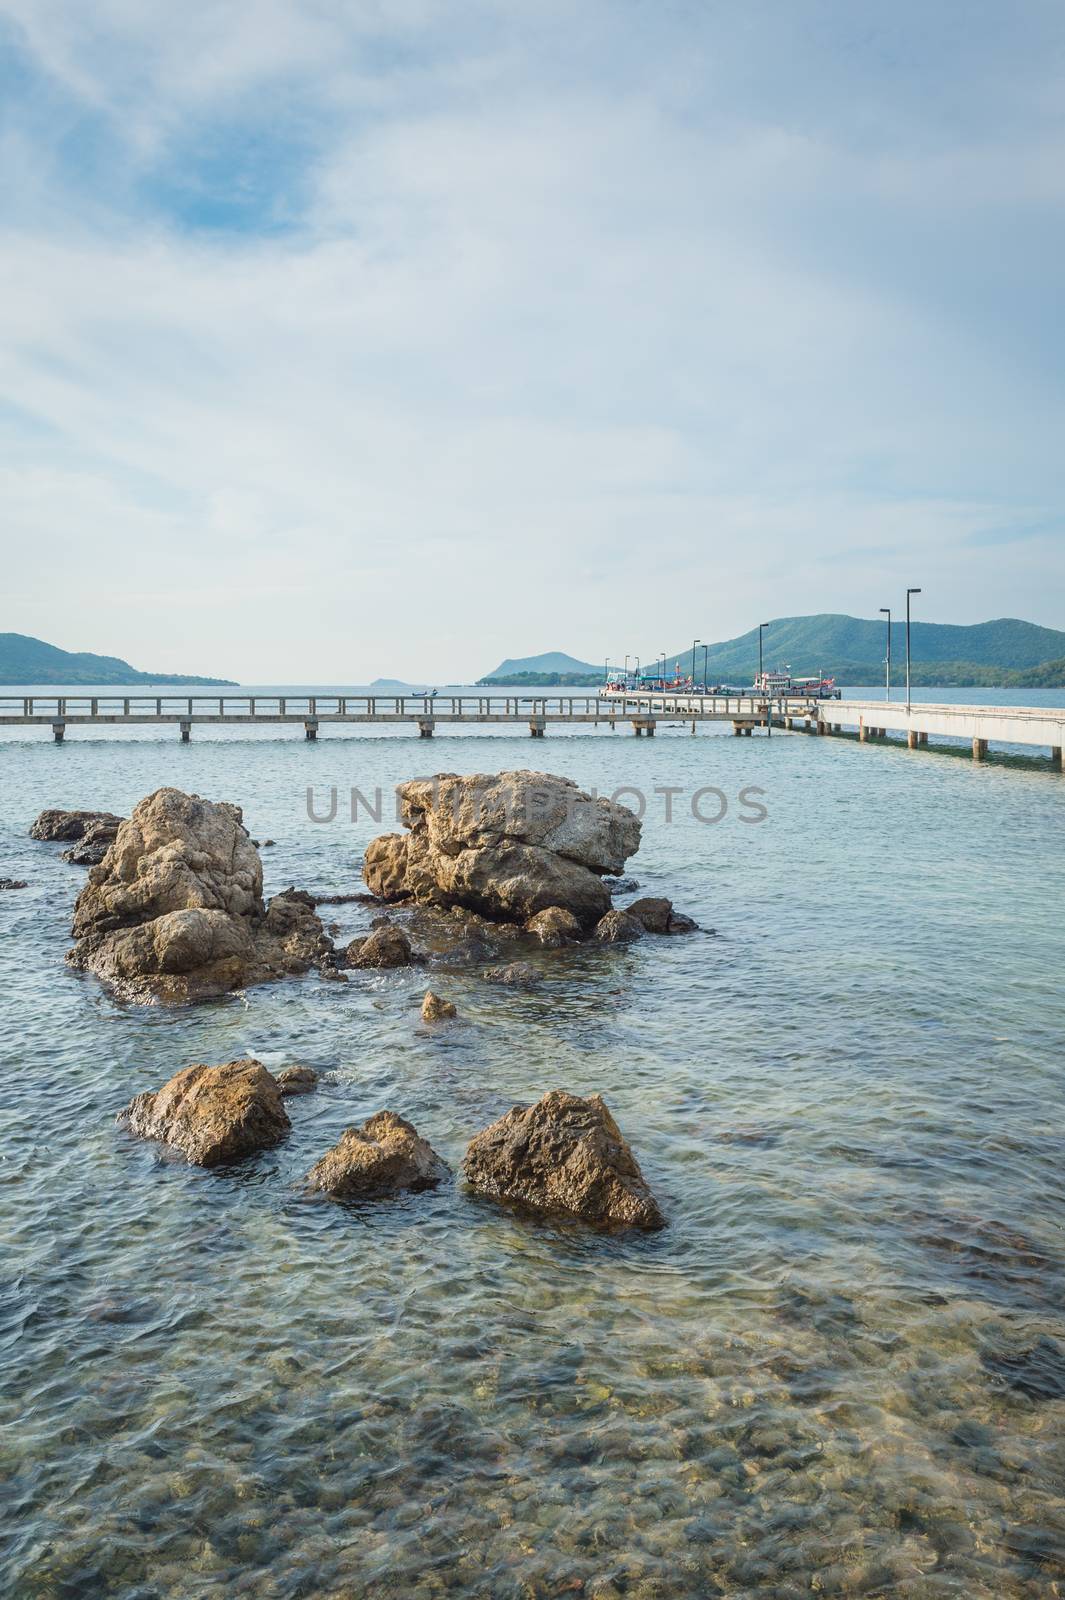 Landscape of rock in the ocean with bridge